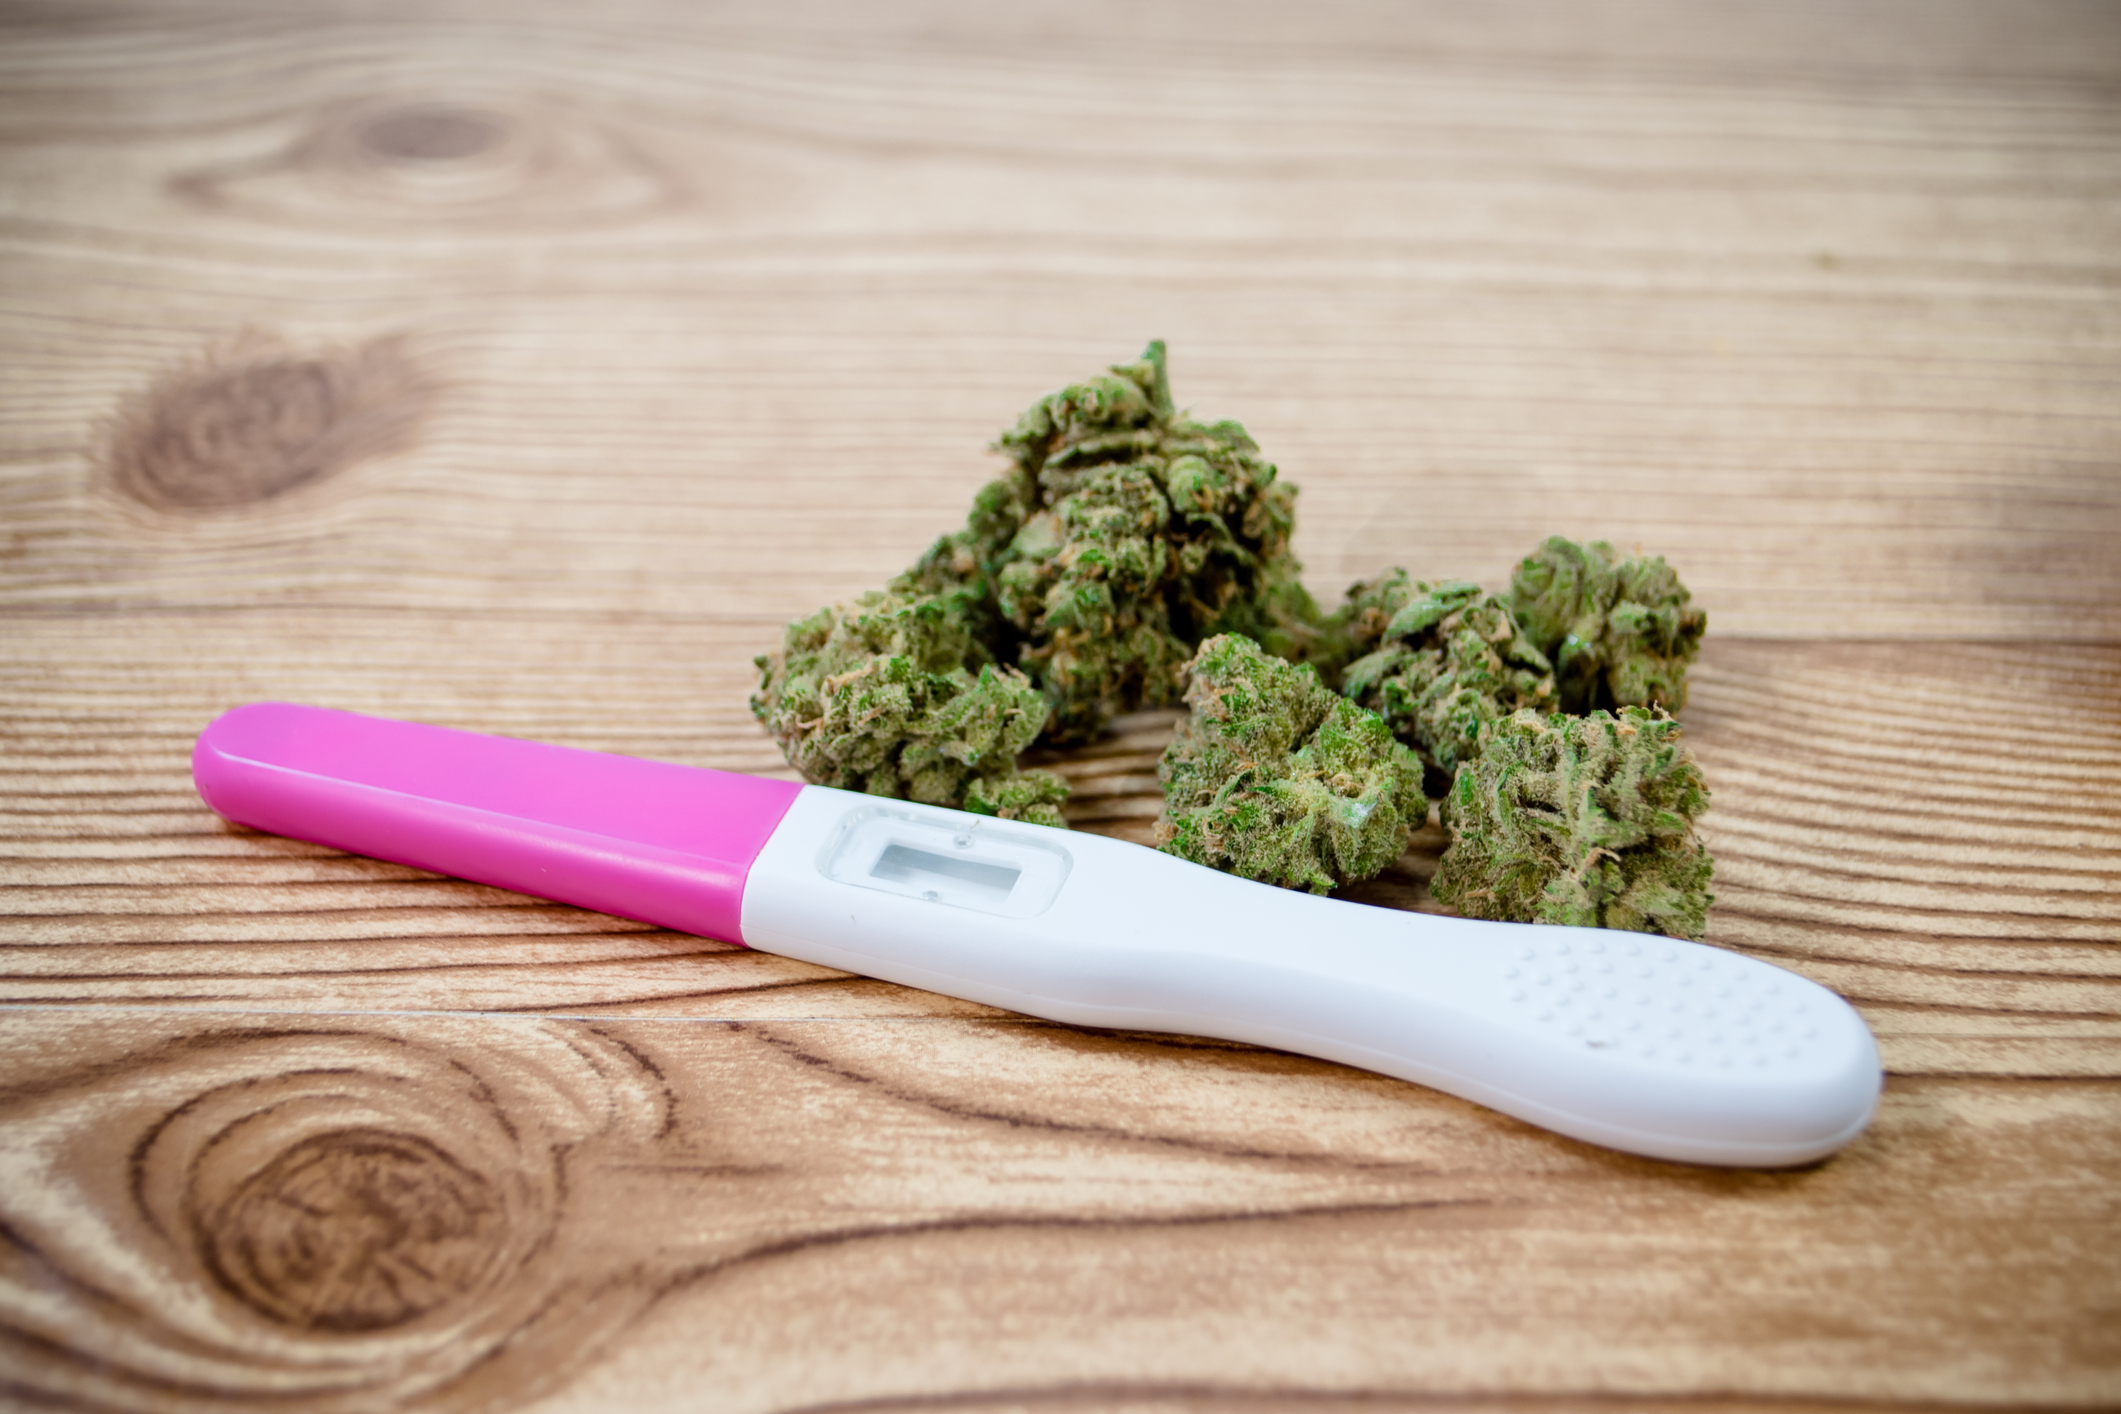 El consumo de marihuana podría no dañar la fertilidad masculina